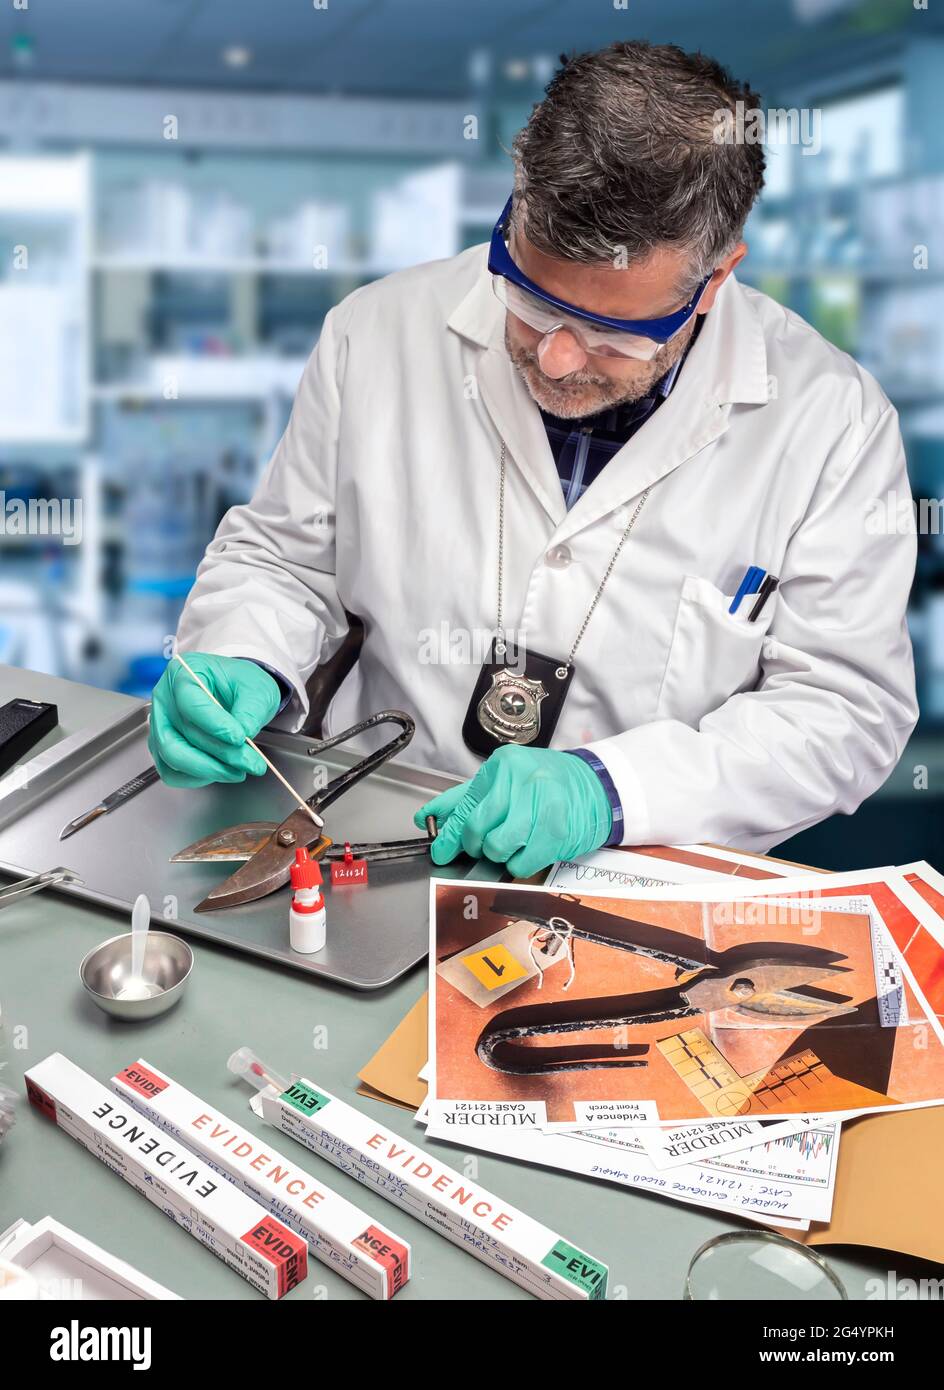 Un científico de la policía extrae una muestra de ADN de unas pinzas en un laboratorio de delincuencia, imagen conceptual Foto de stock